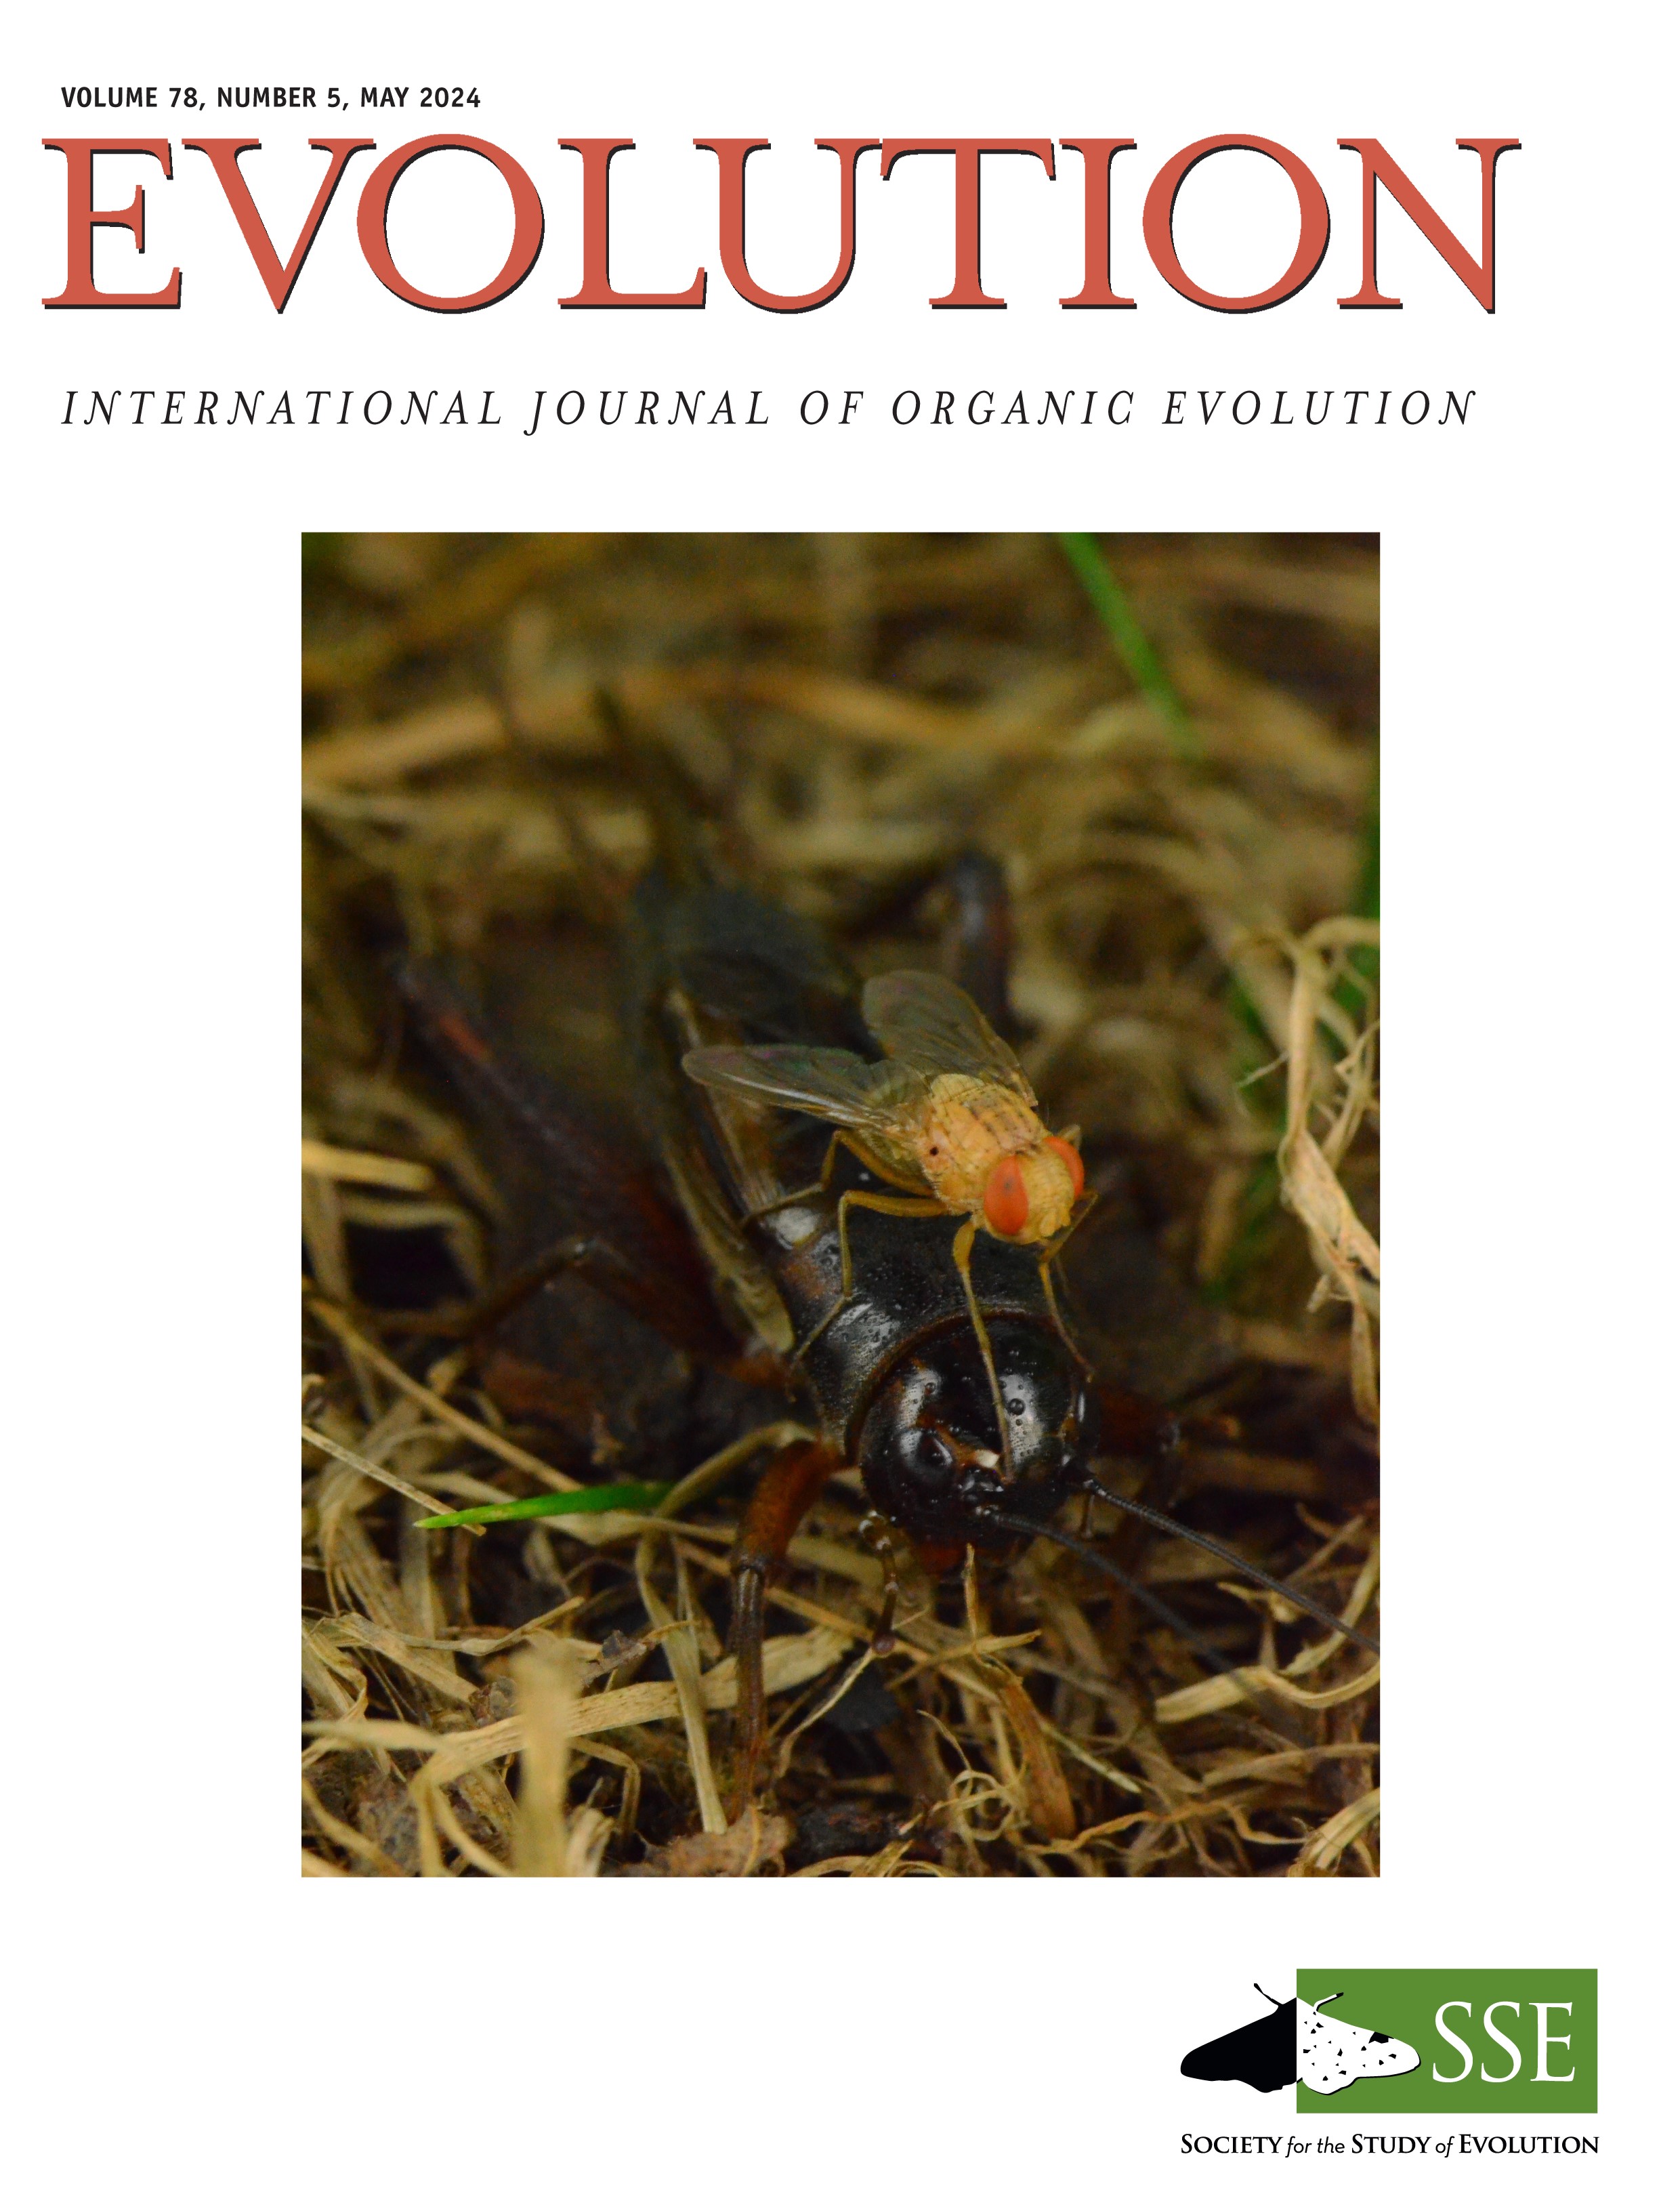 Evolution journal cover